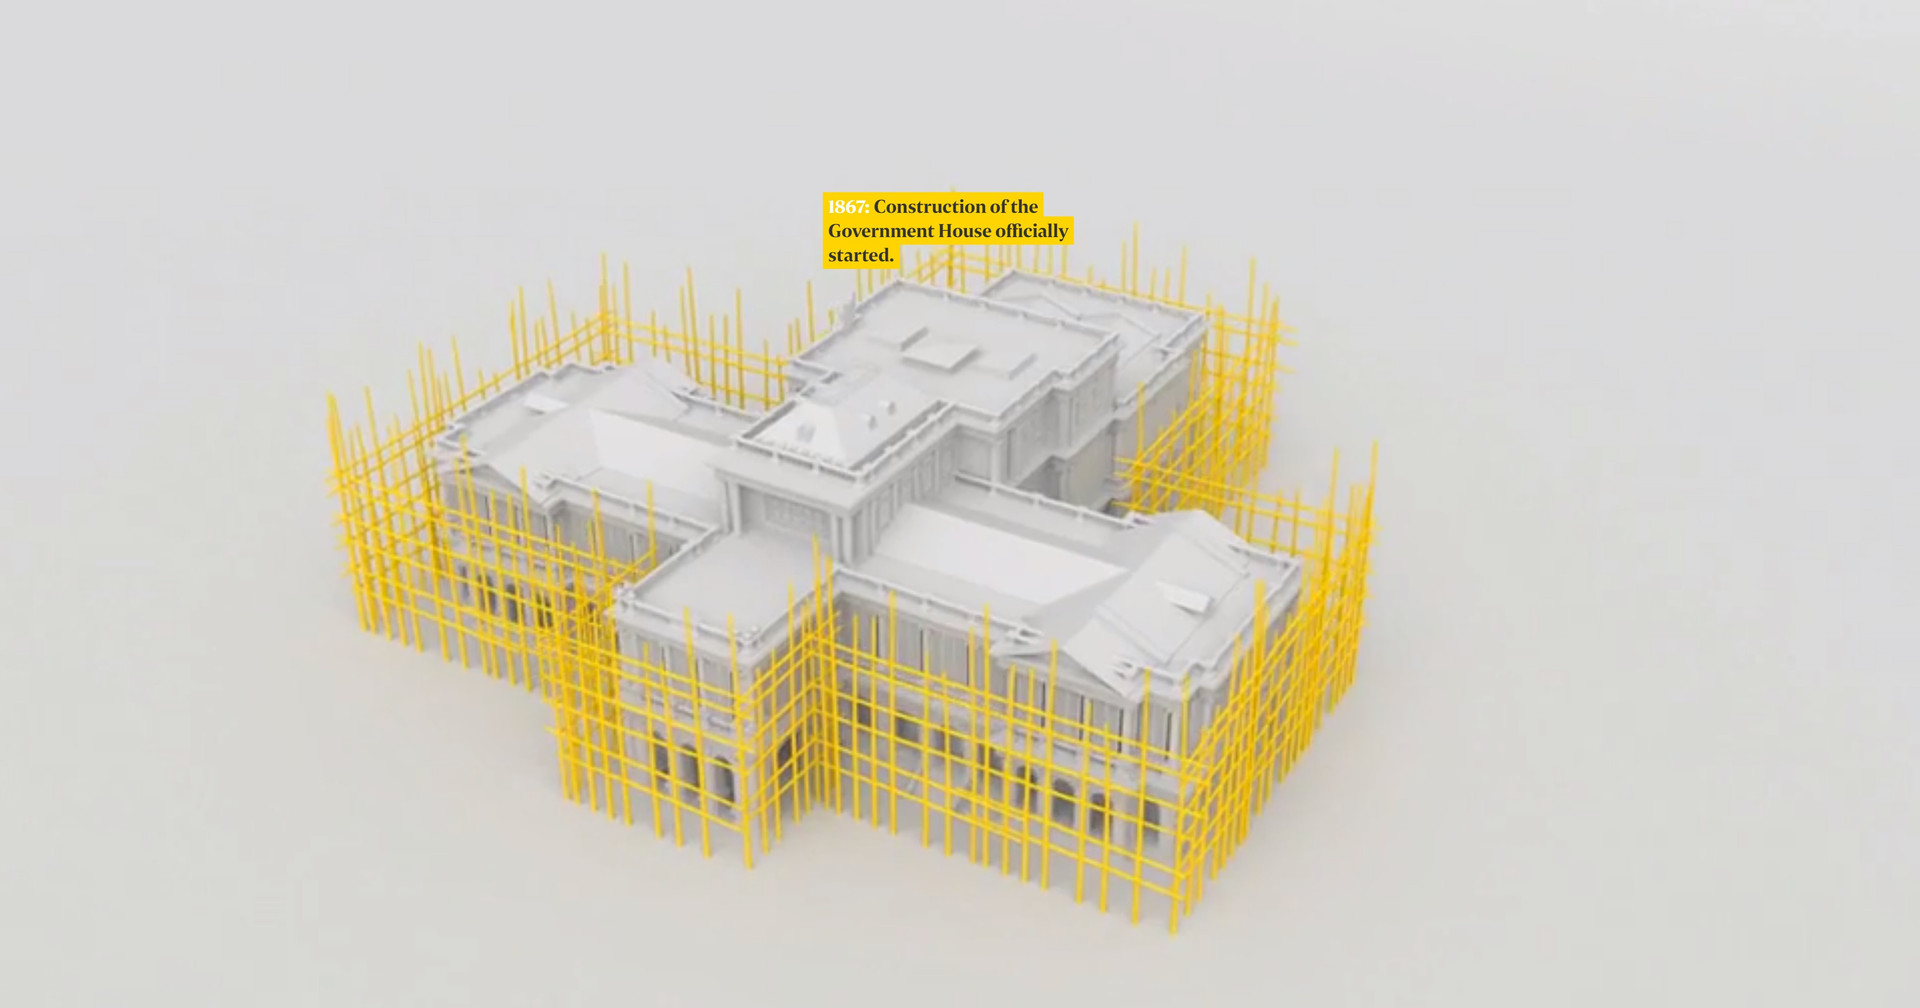 Элементы 3D-графики в&nbsp;мультимедийном проекте “Inside the Istana”. Скриншот страницы проекта